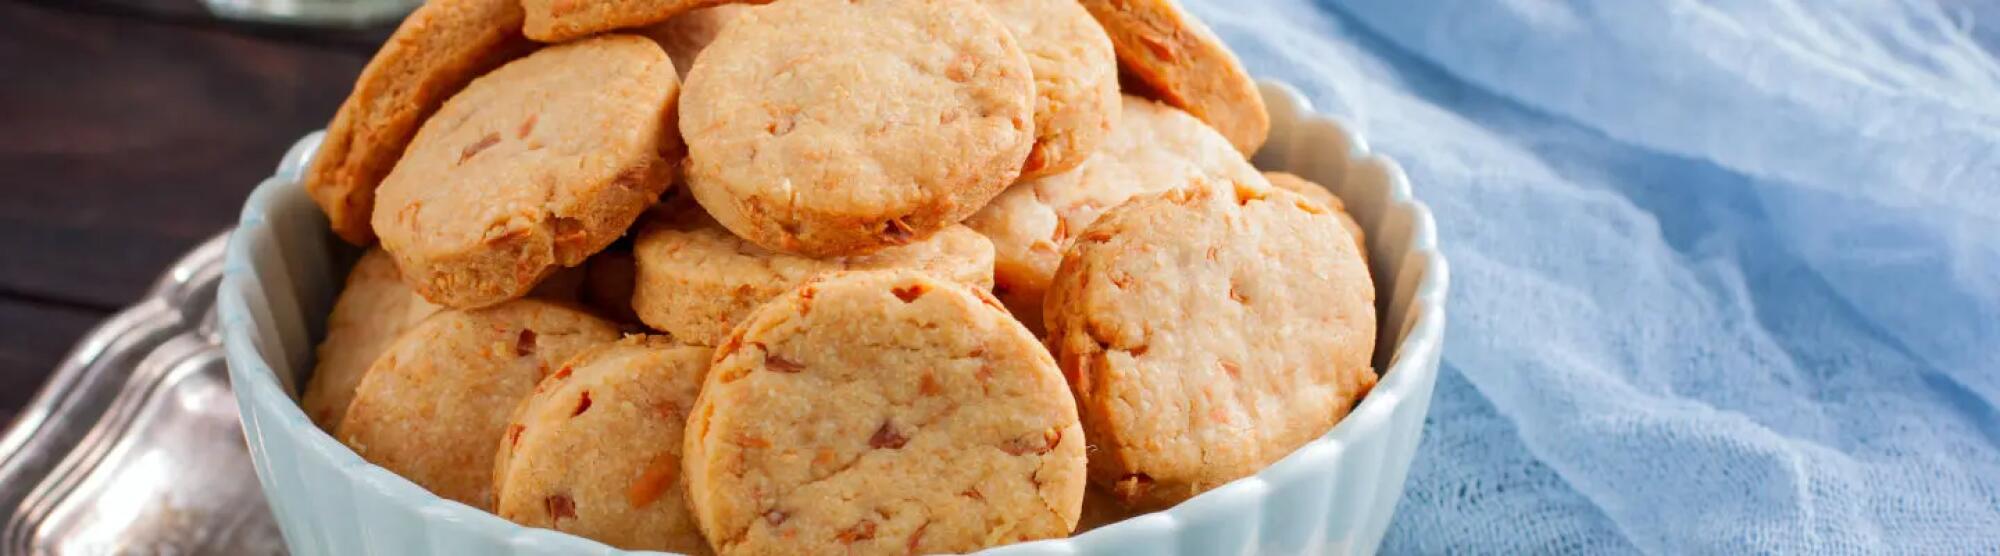 Recette : Cookies salés au parmesan